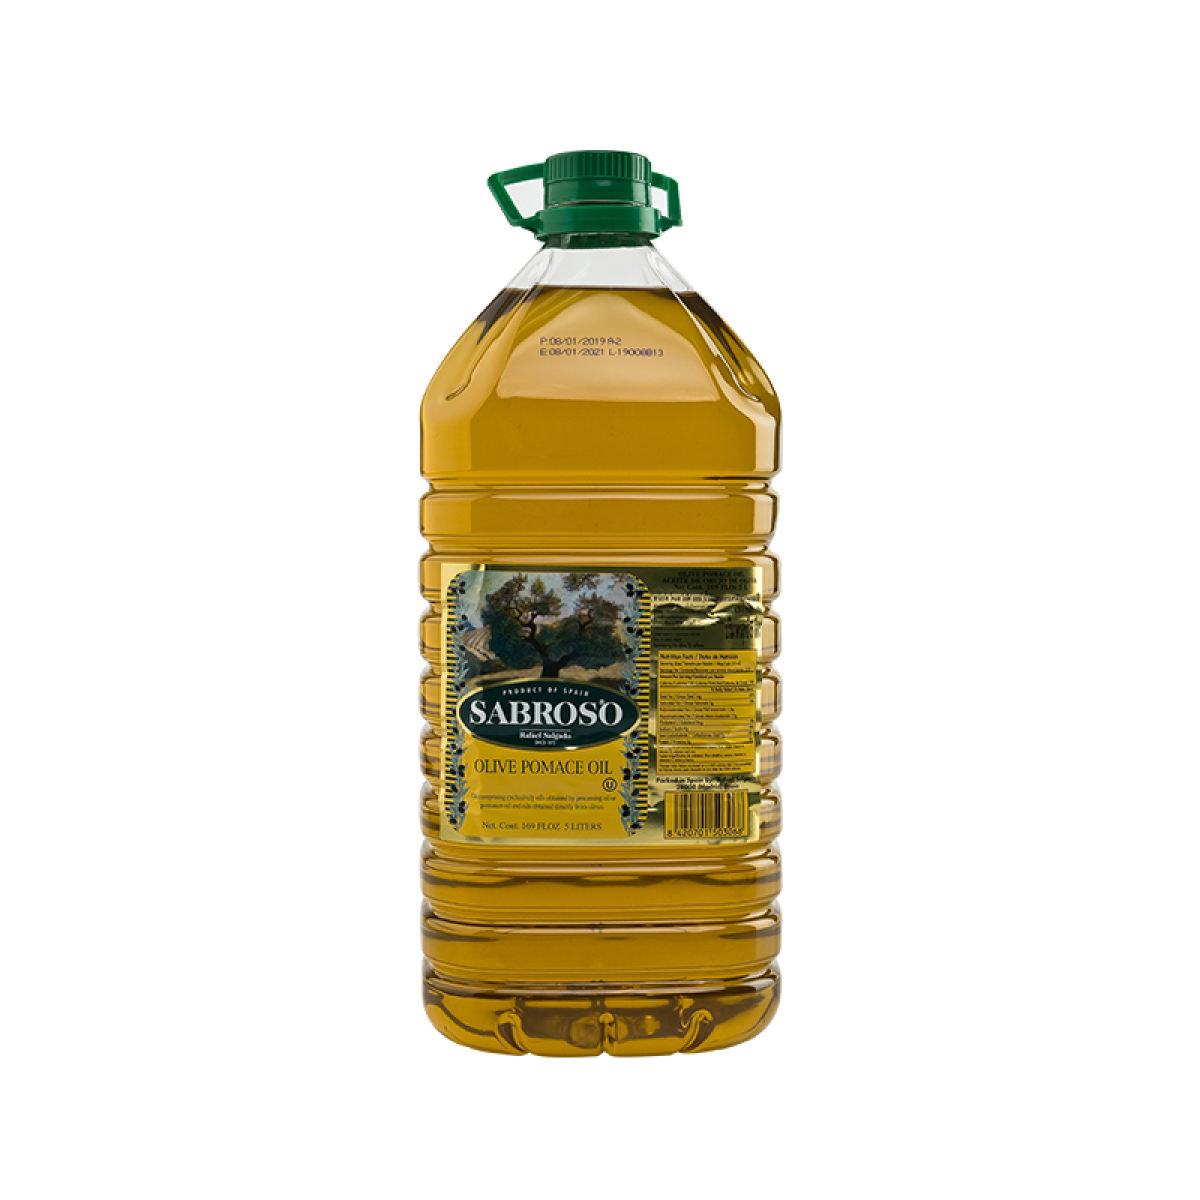 Sabroso Extra Virgin Olive Oil 5 lTR